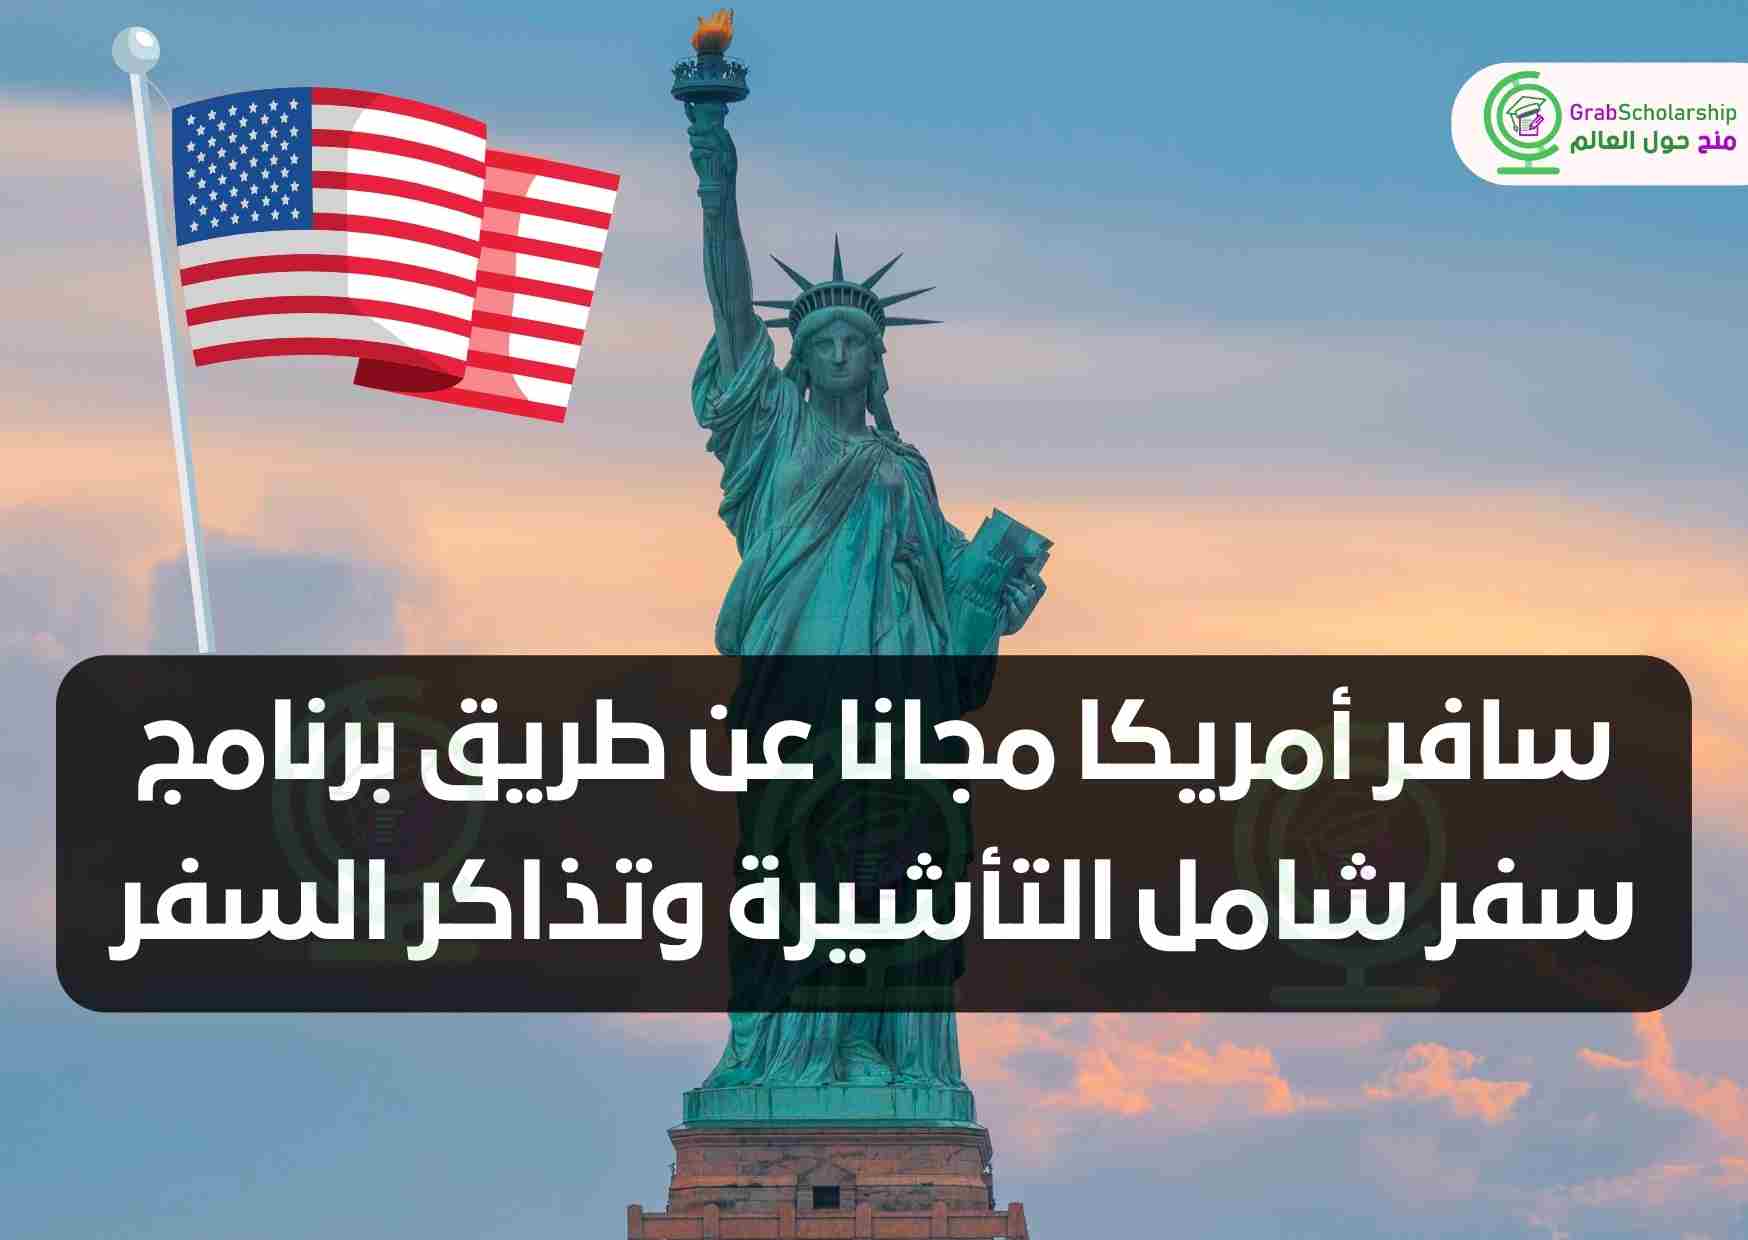 سافر أمريكا مجانا عن طريق برنامج سفر شامل التأشيرة وتذاكر السفر